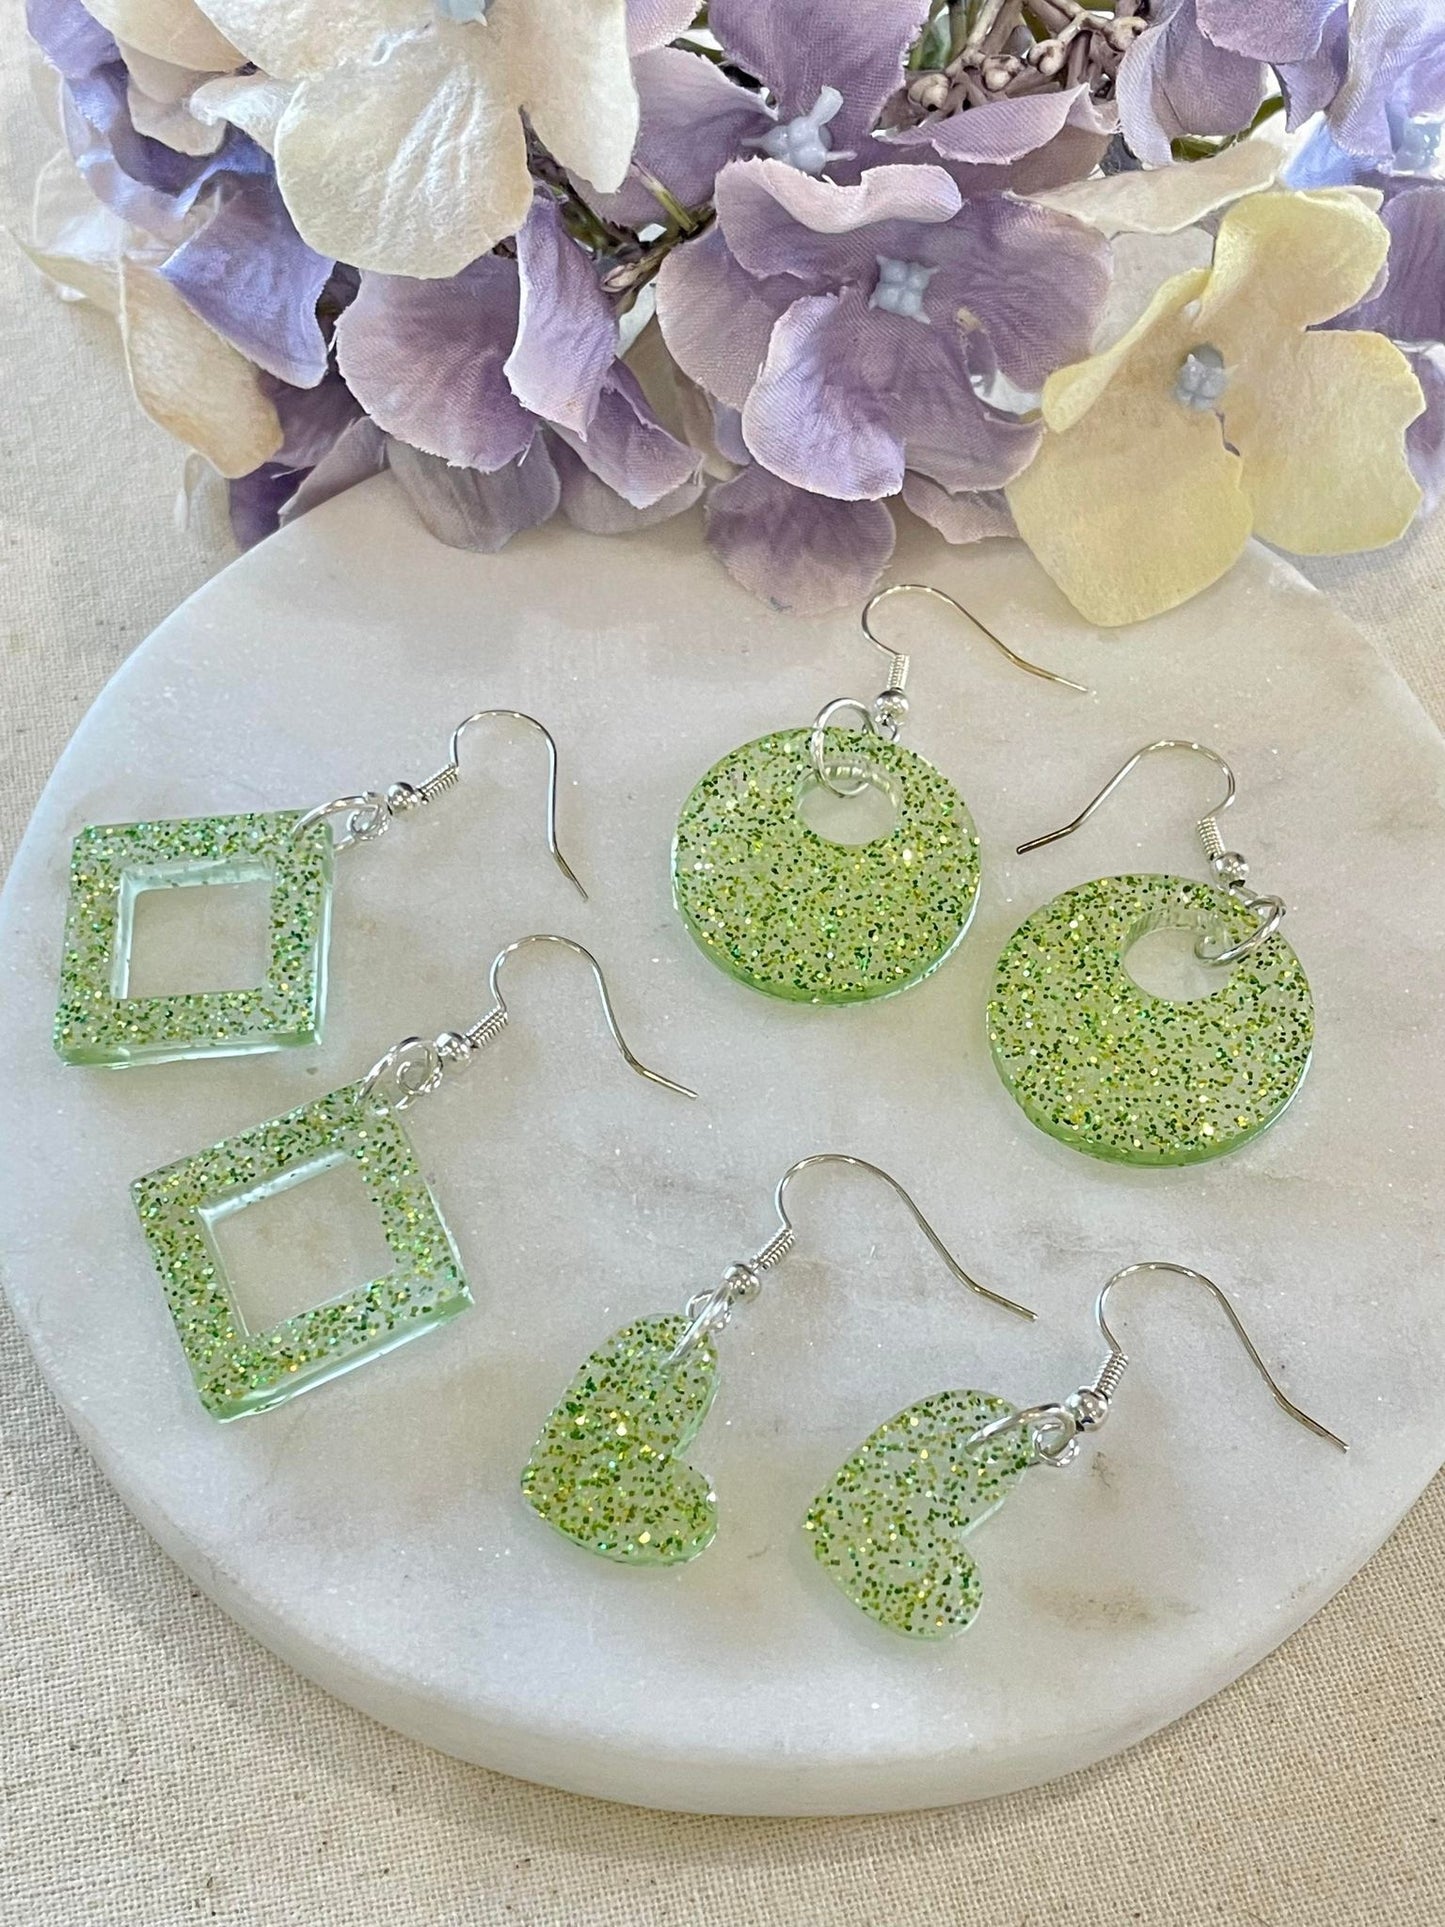 Off center lime green glitter heart earrings